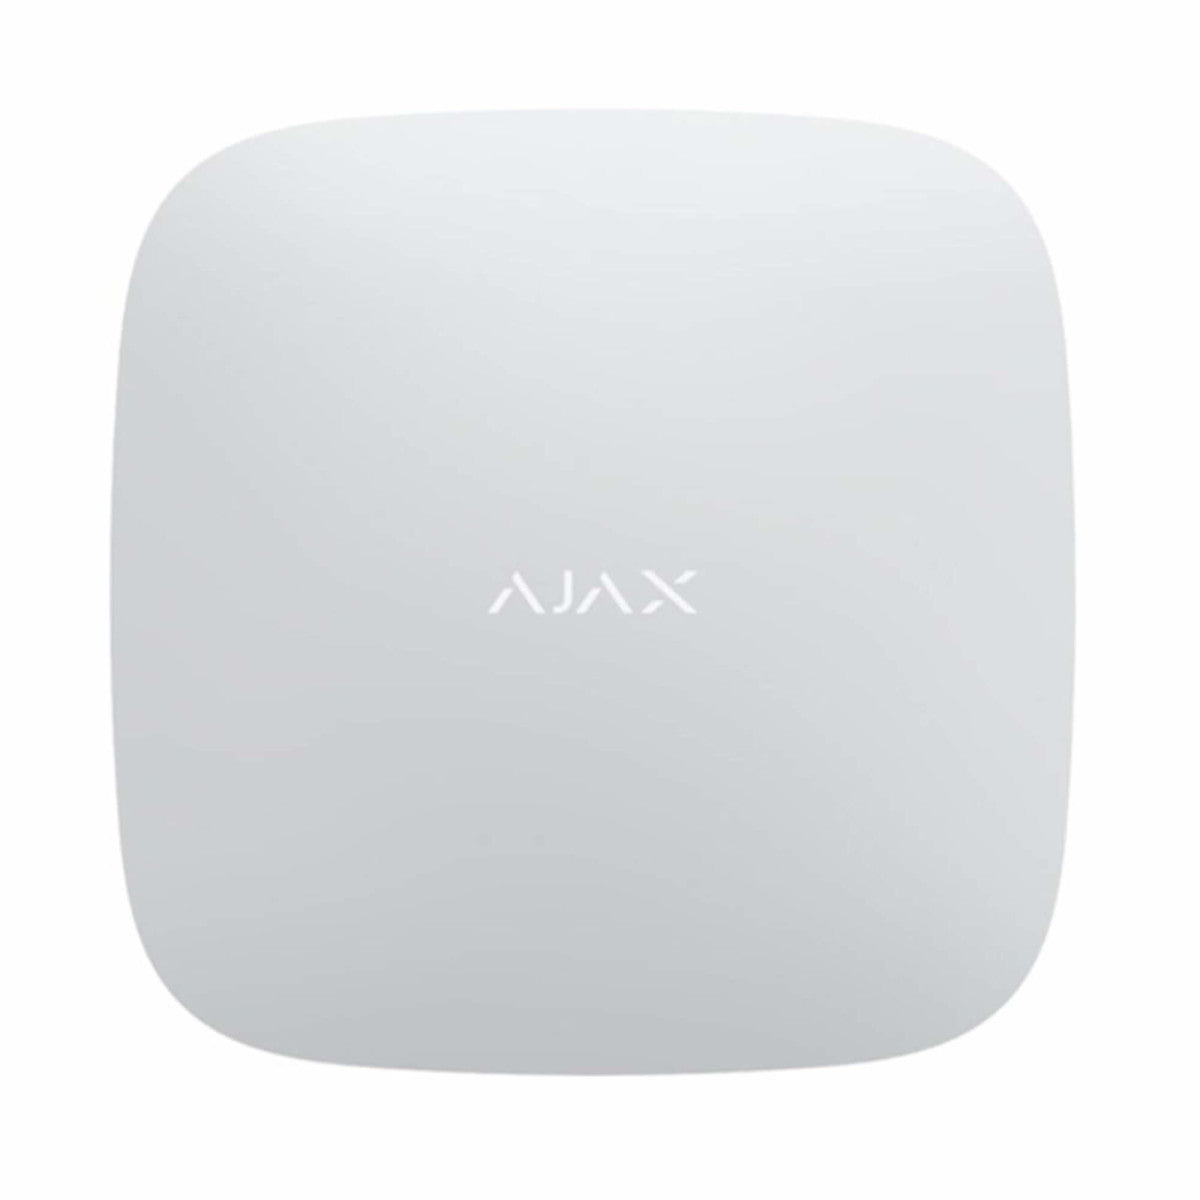 AJAX Funk-Repeater. Vergrößerung der Reichweite und verstärkung des Systems - ReX